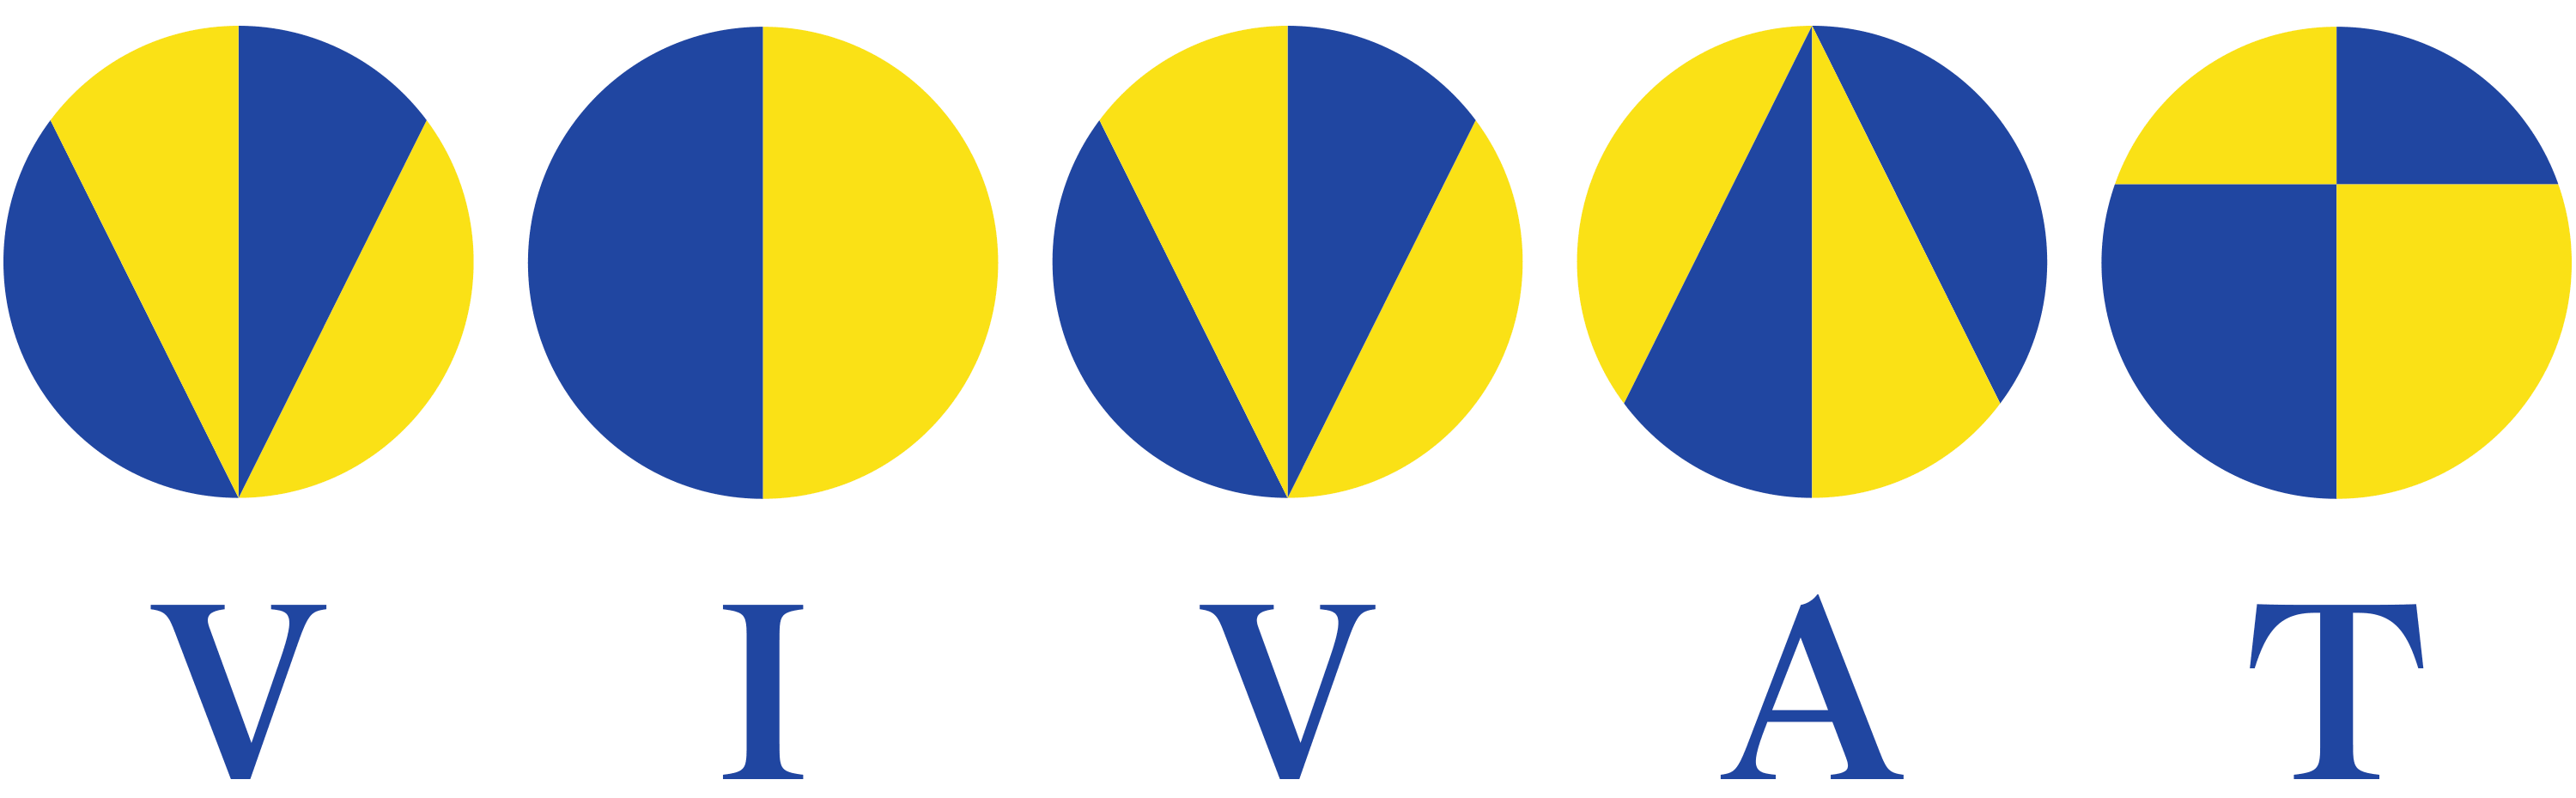 VIVAT Logo